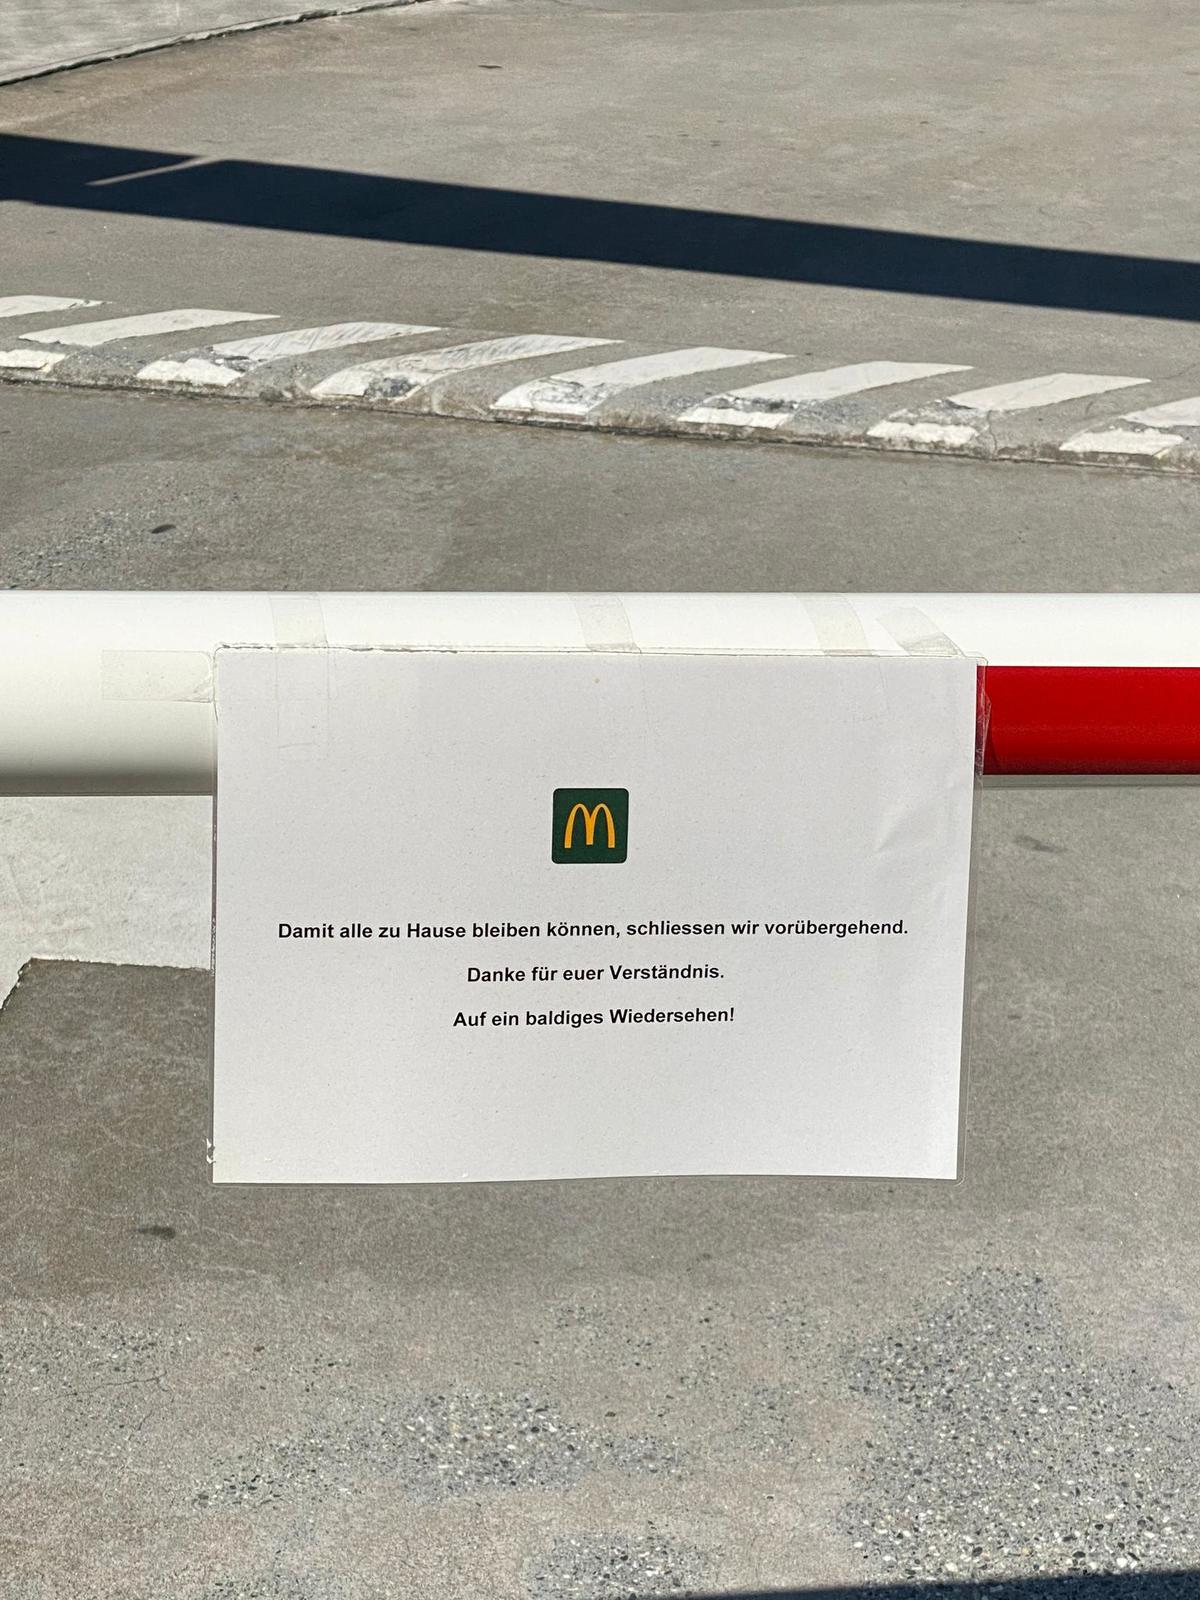 Damit alle zu Hause bleiben können, schliessen wir vorübergehend, schreibt McDonalds beim McDrive in Chur.